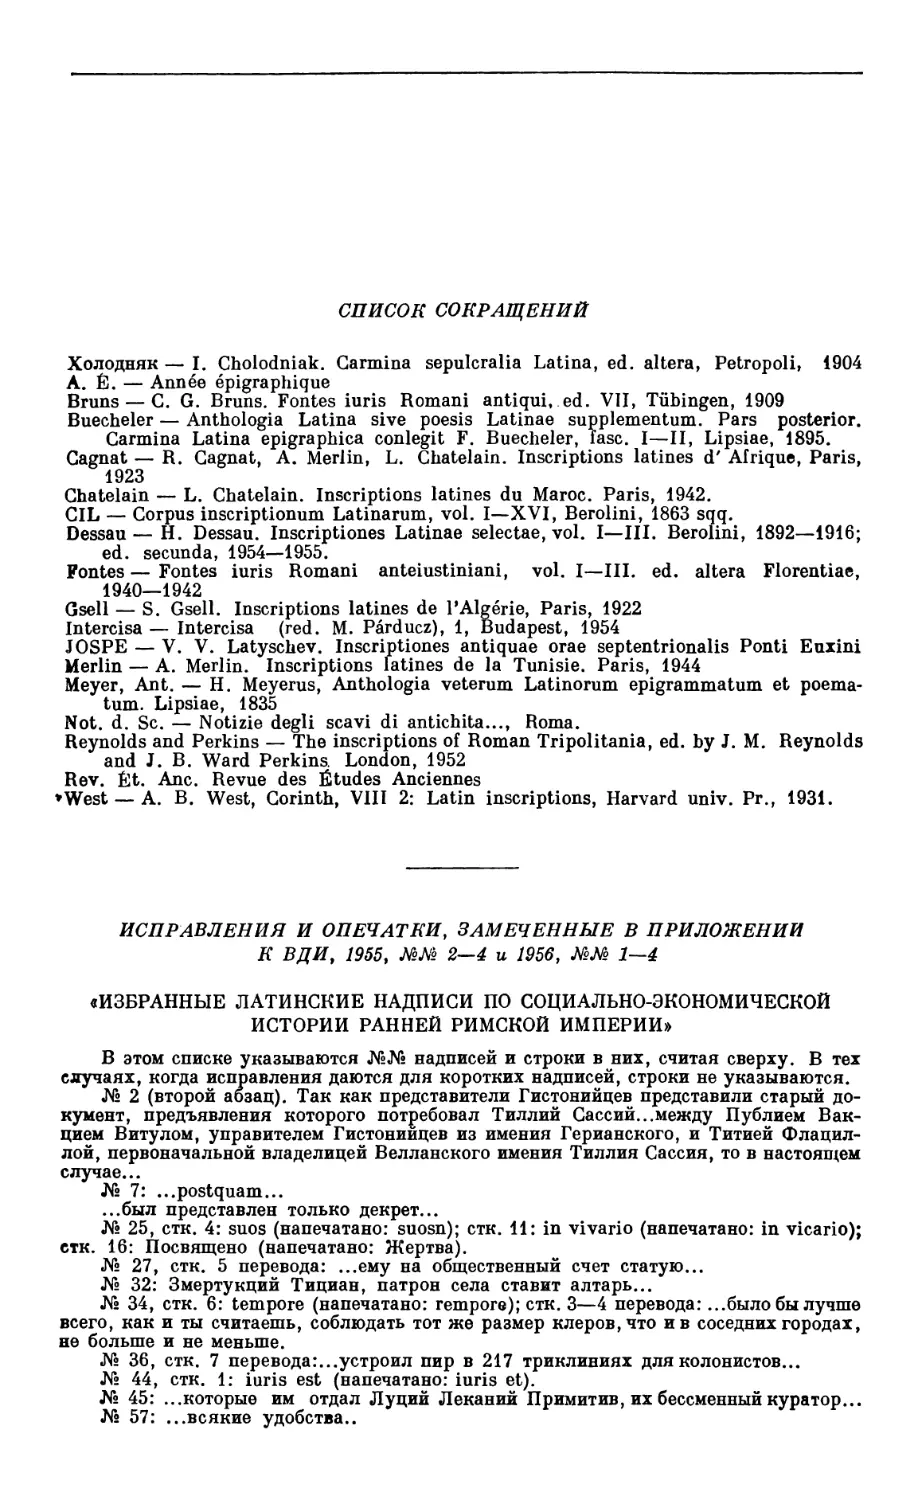 Список  сокращений  и  опечатки  в  приложении  к  ВДИ,  1955,  №№  2—4  и  1956, №№  1—4